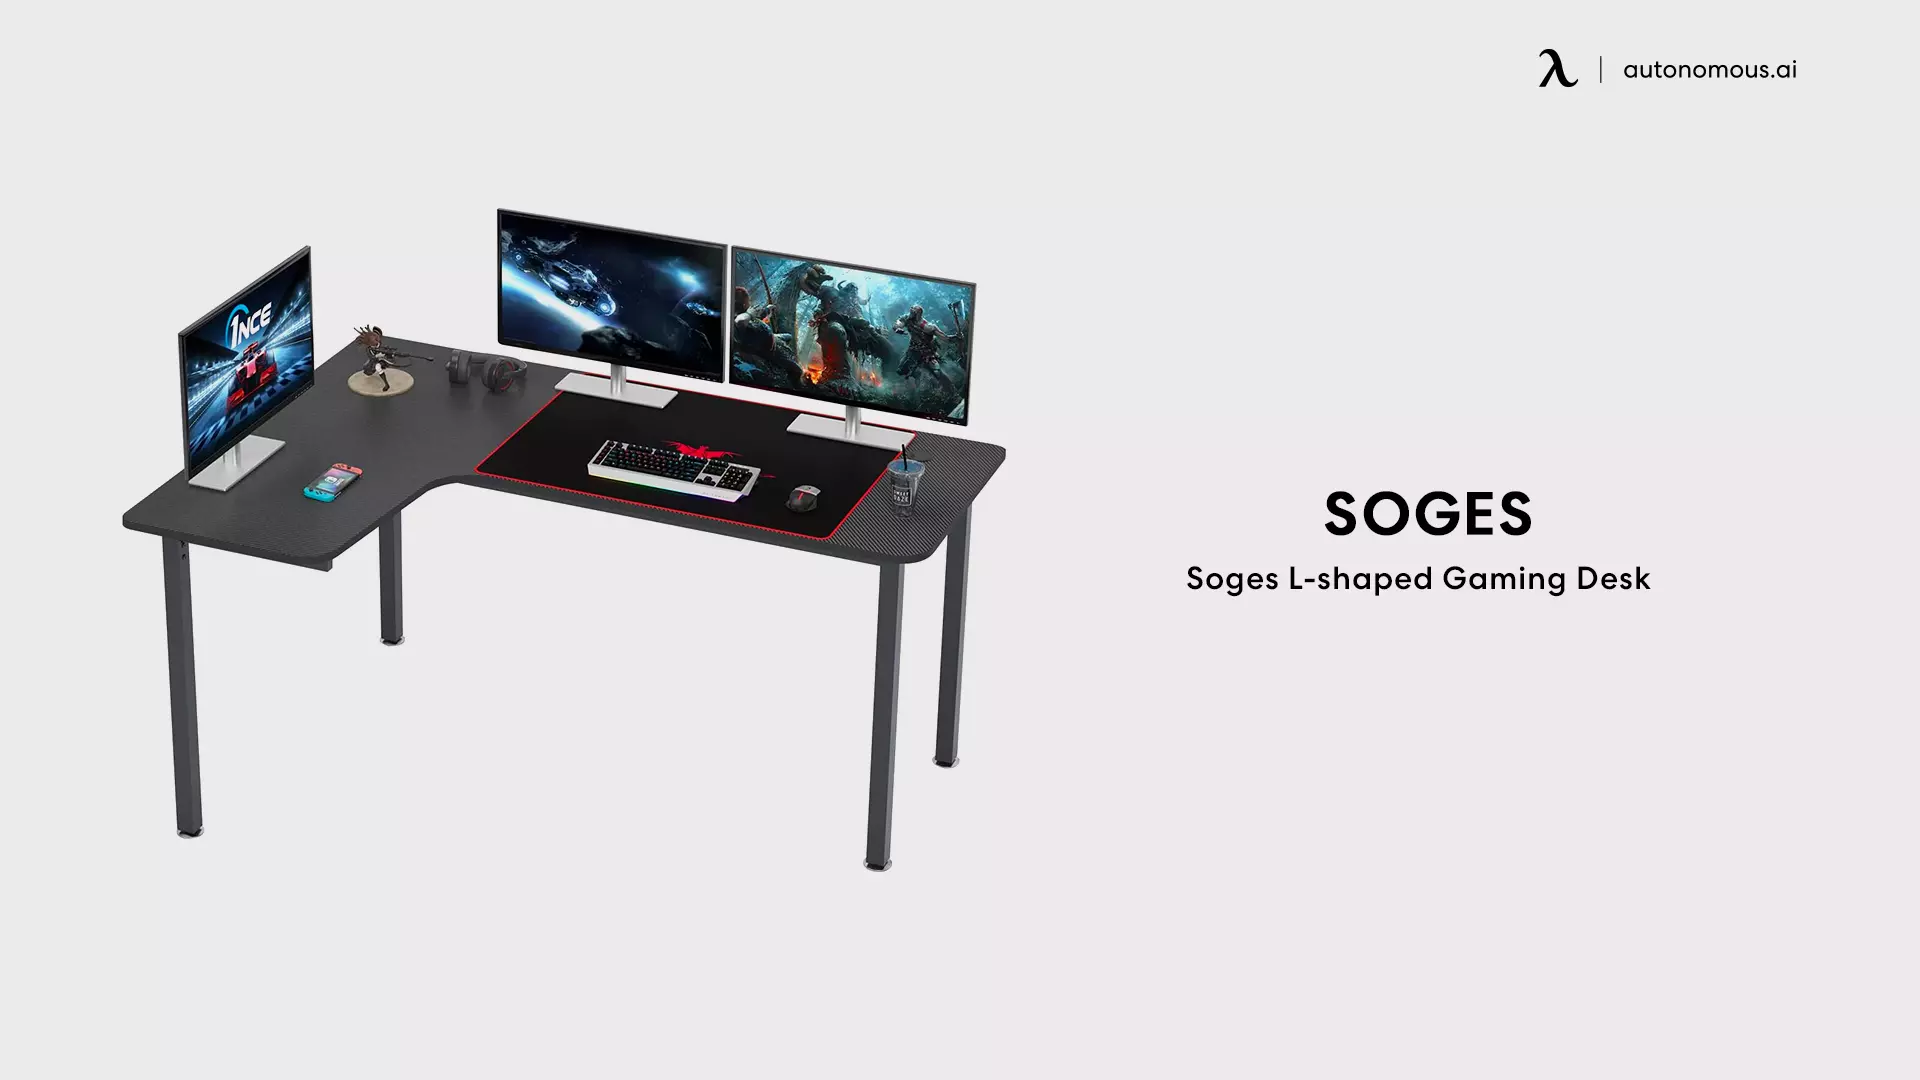 Soges L-shaped Gaming Desk